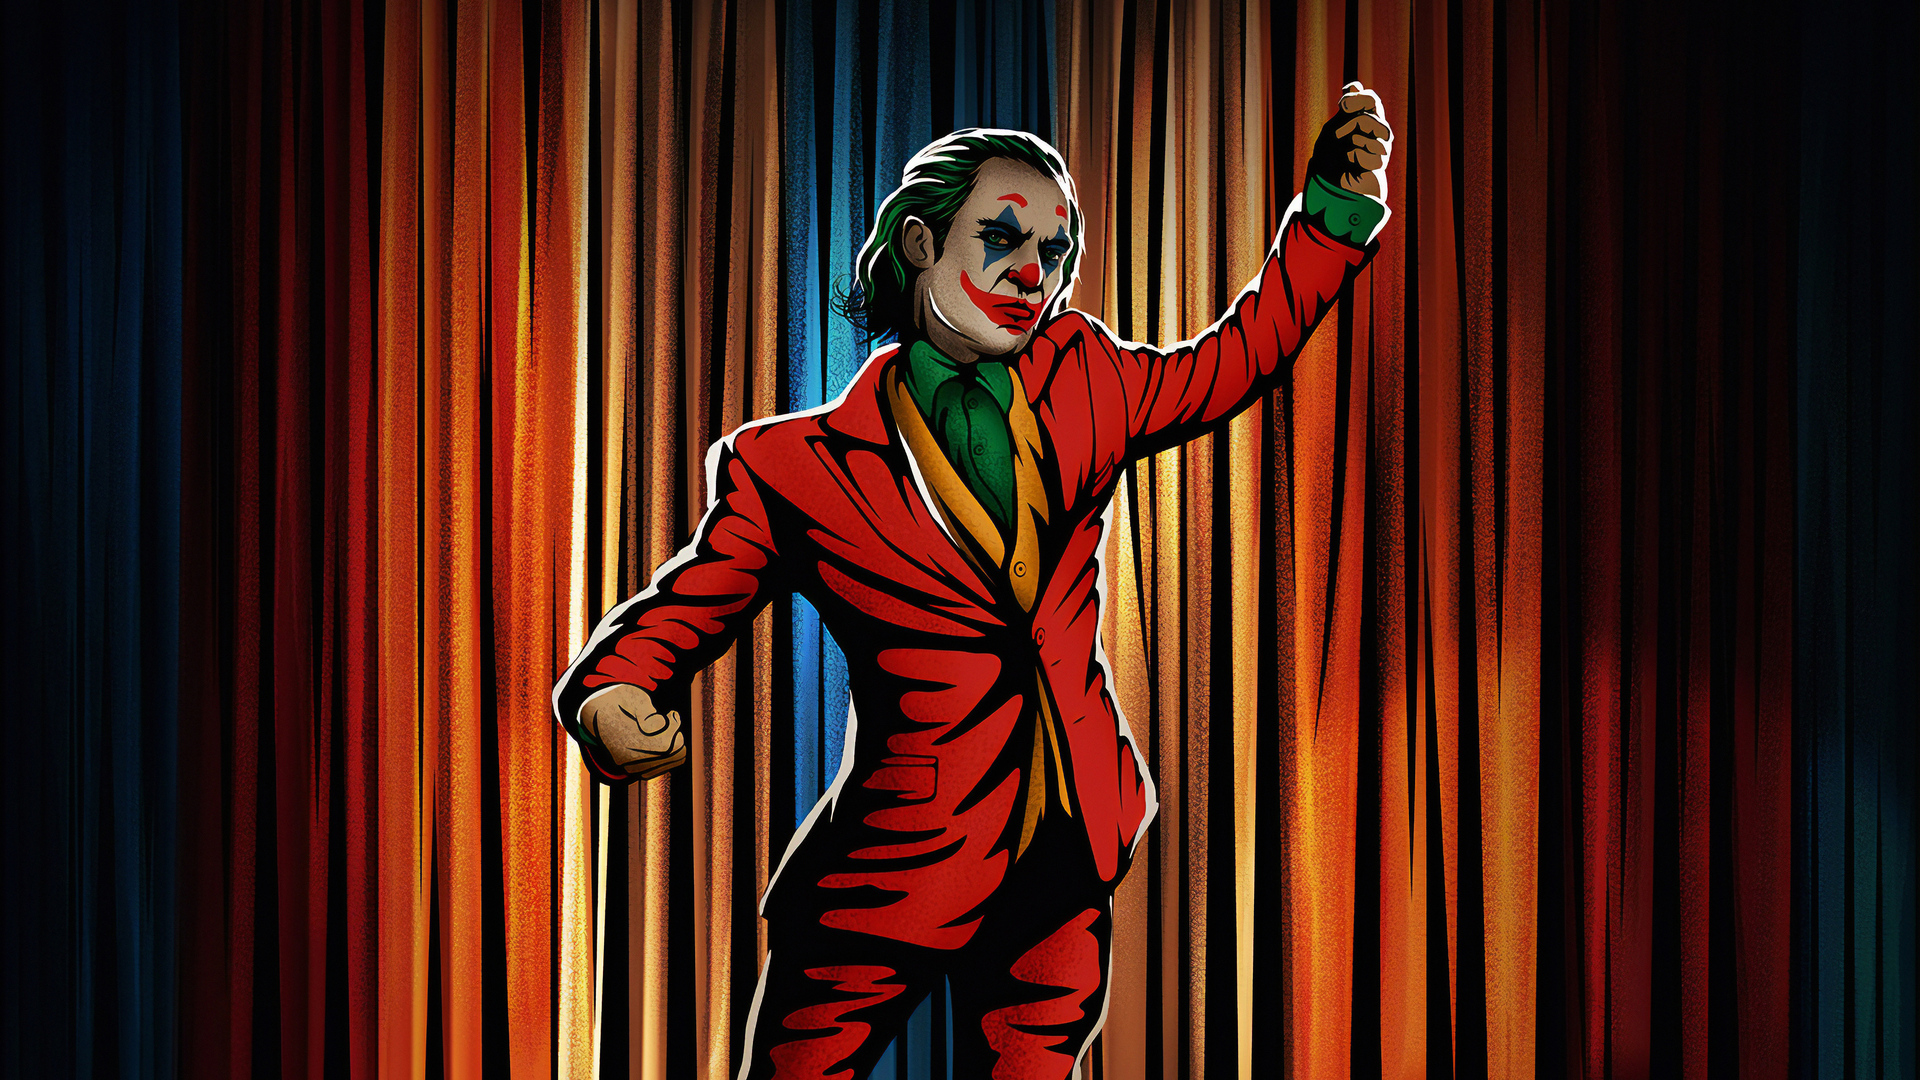 Hình ảnh Joker đẹp, hài hước nhất